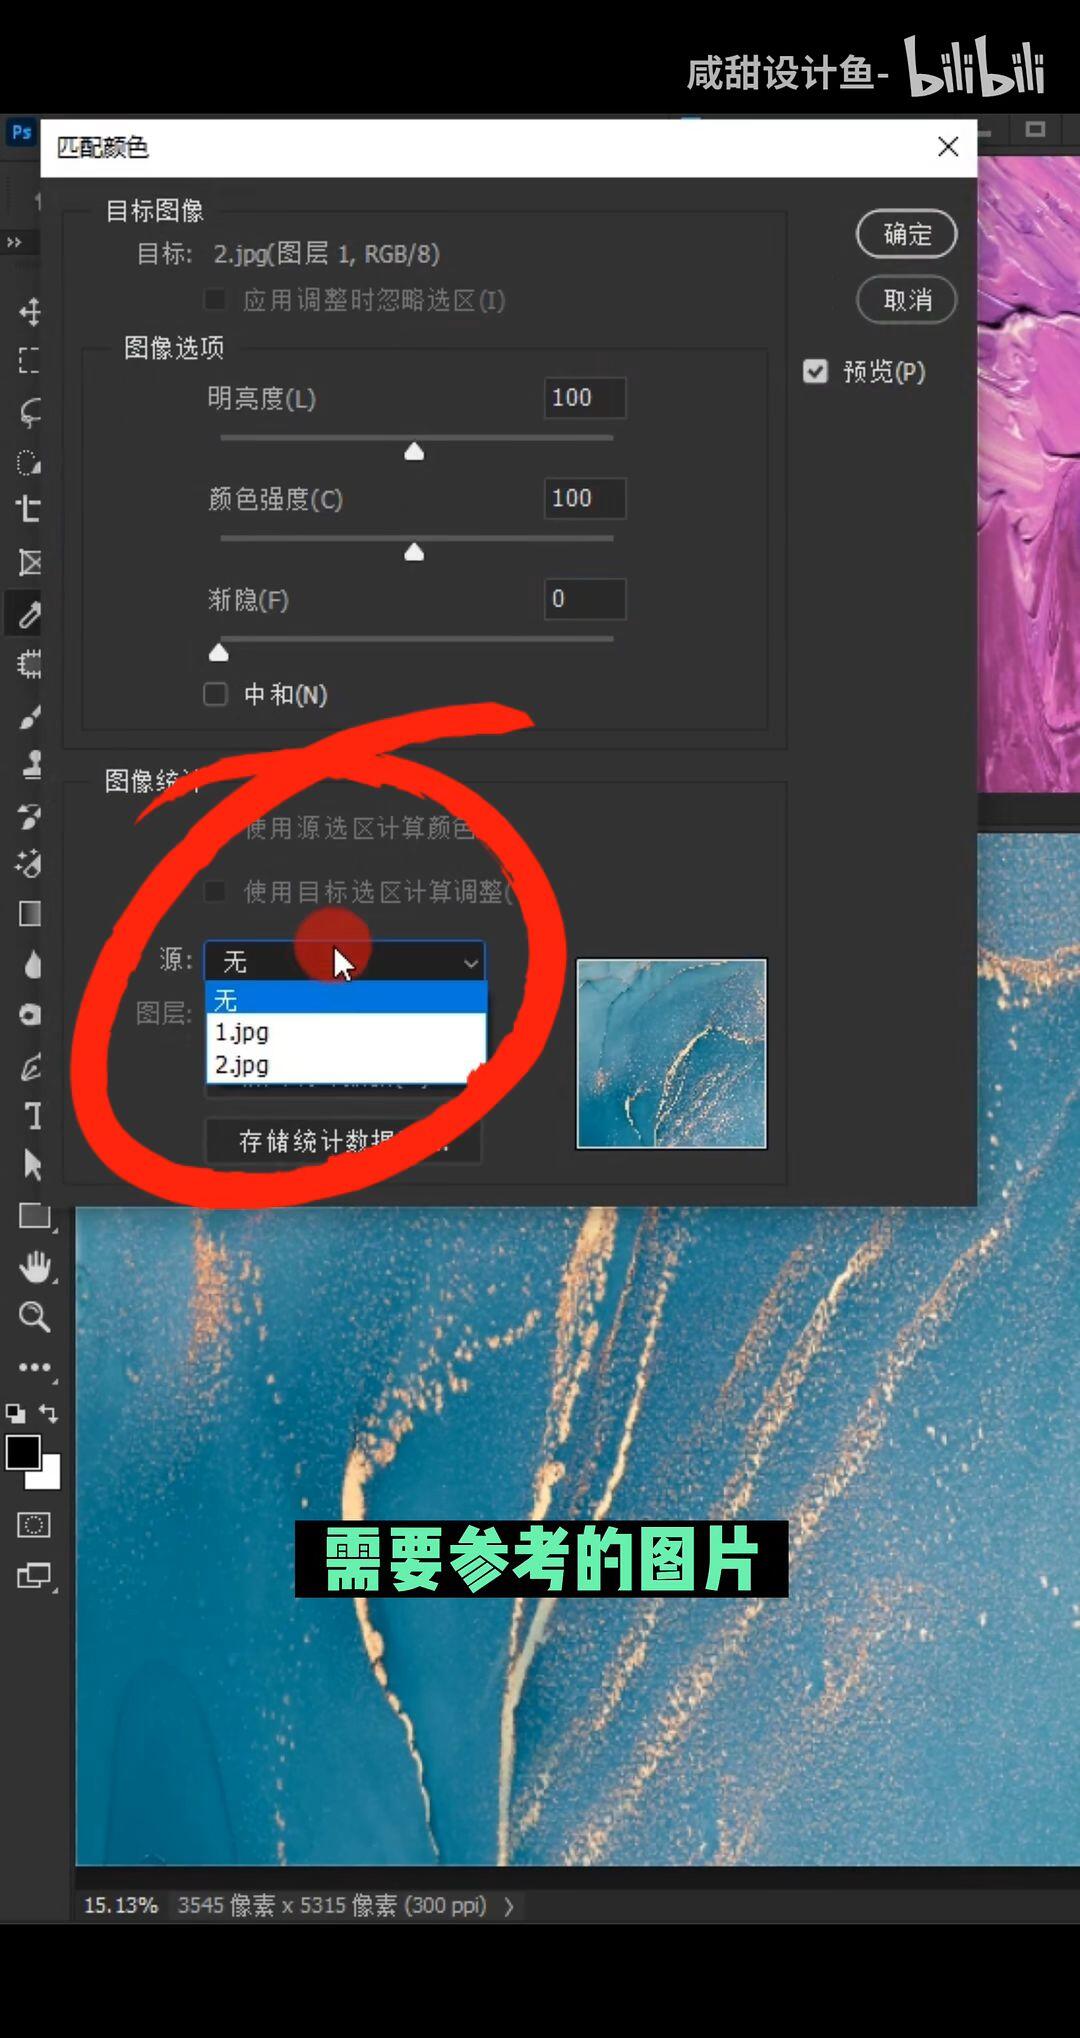 PS怎么把抠出来的图片放到另一张图片中-Adobe Photoshop把抠的图放到另一背景图上的方法教程 - 极光下载站